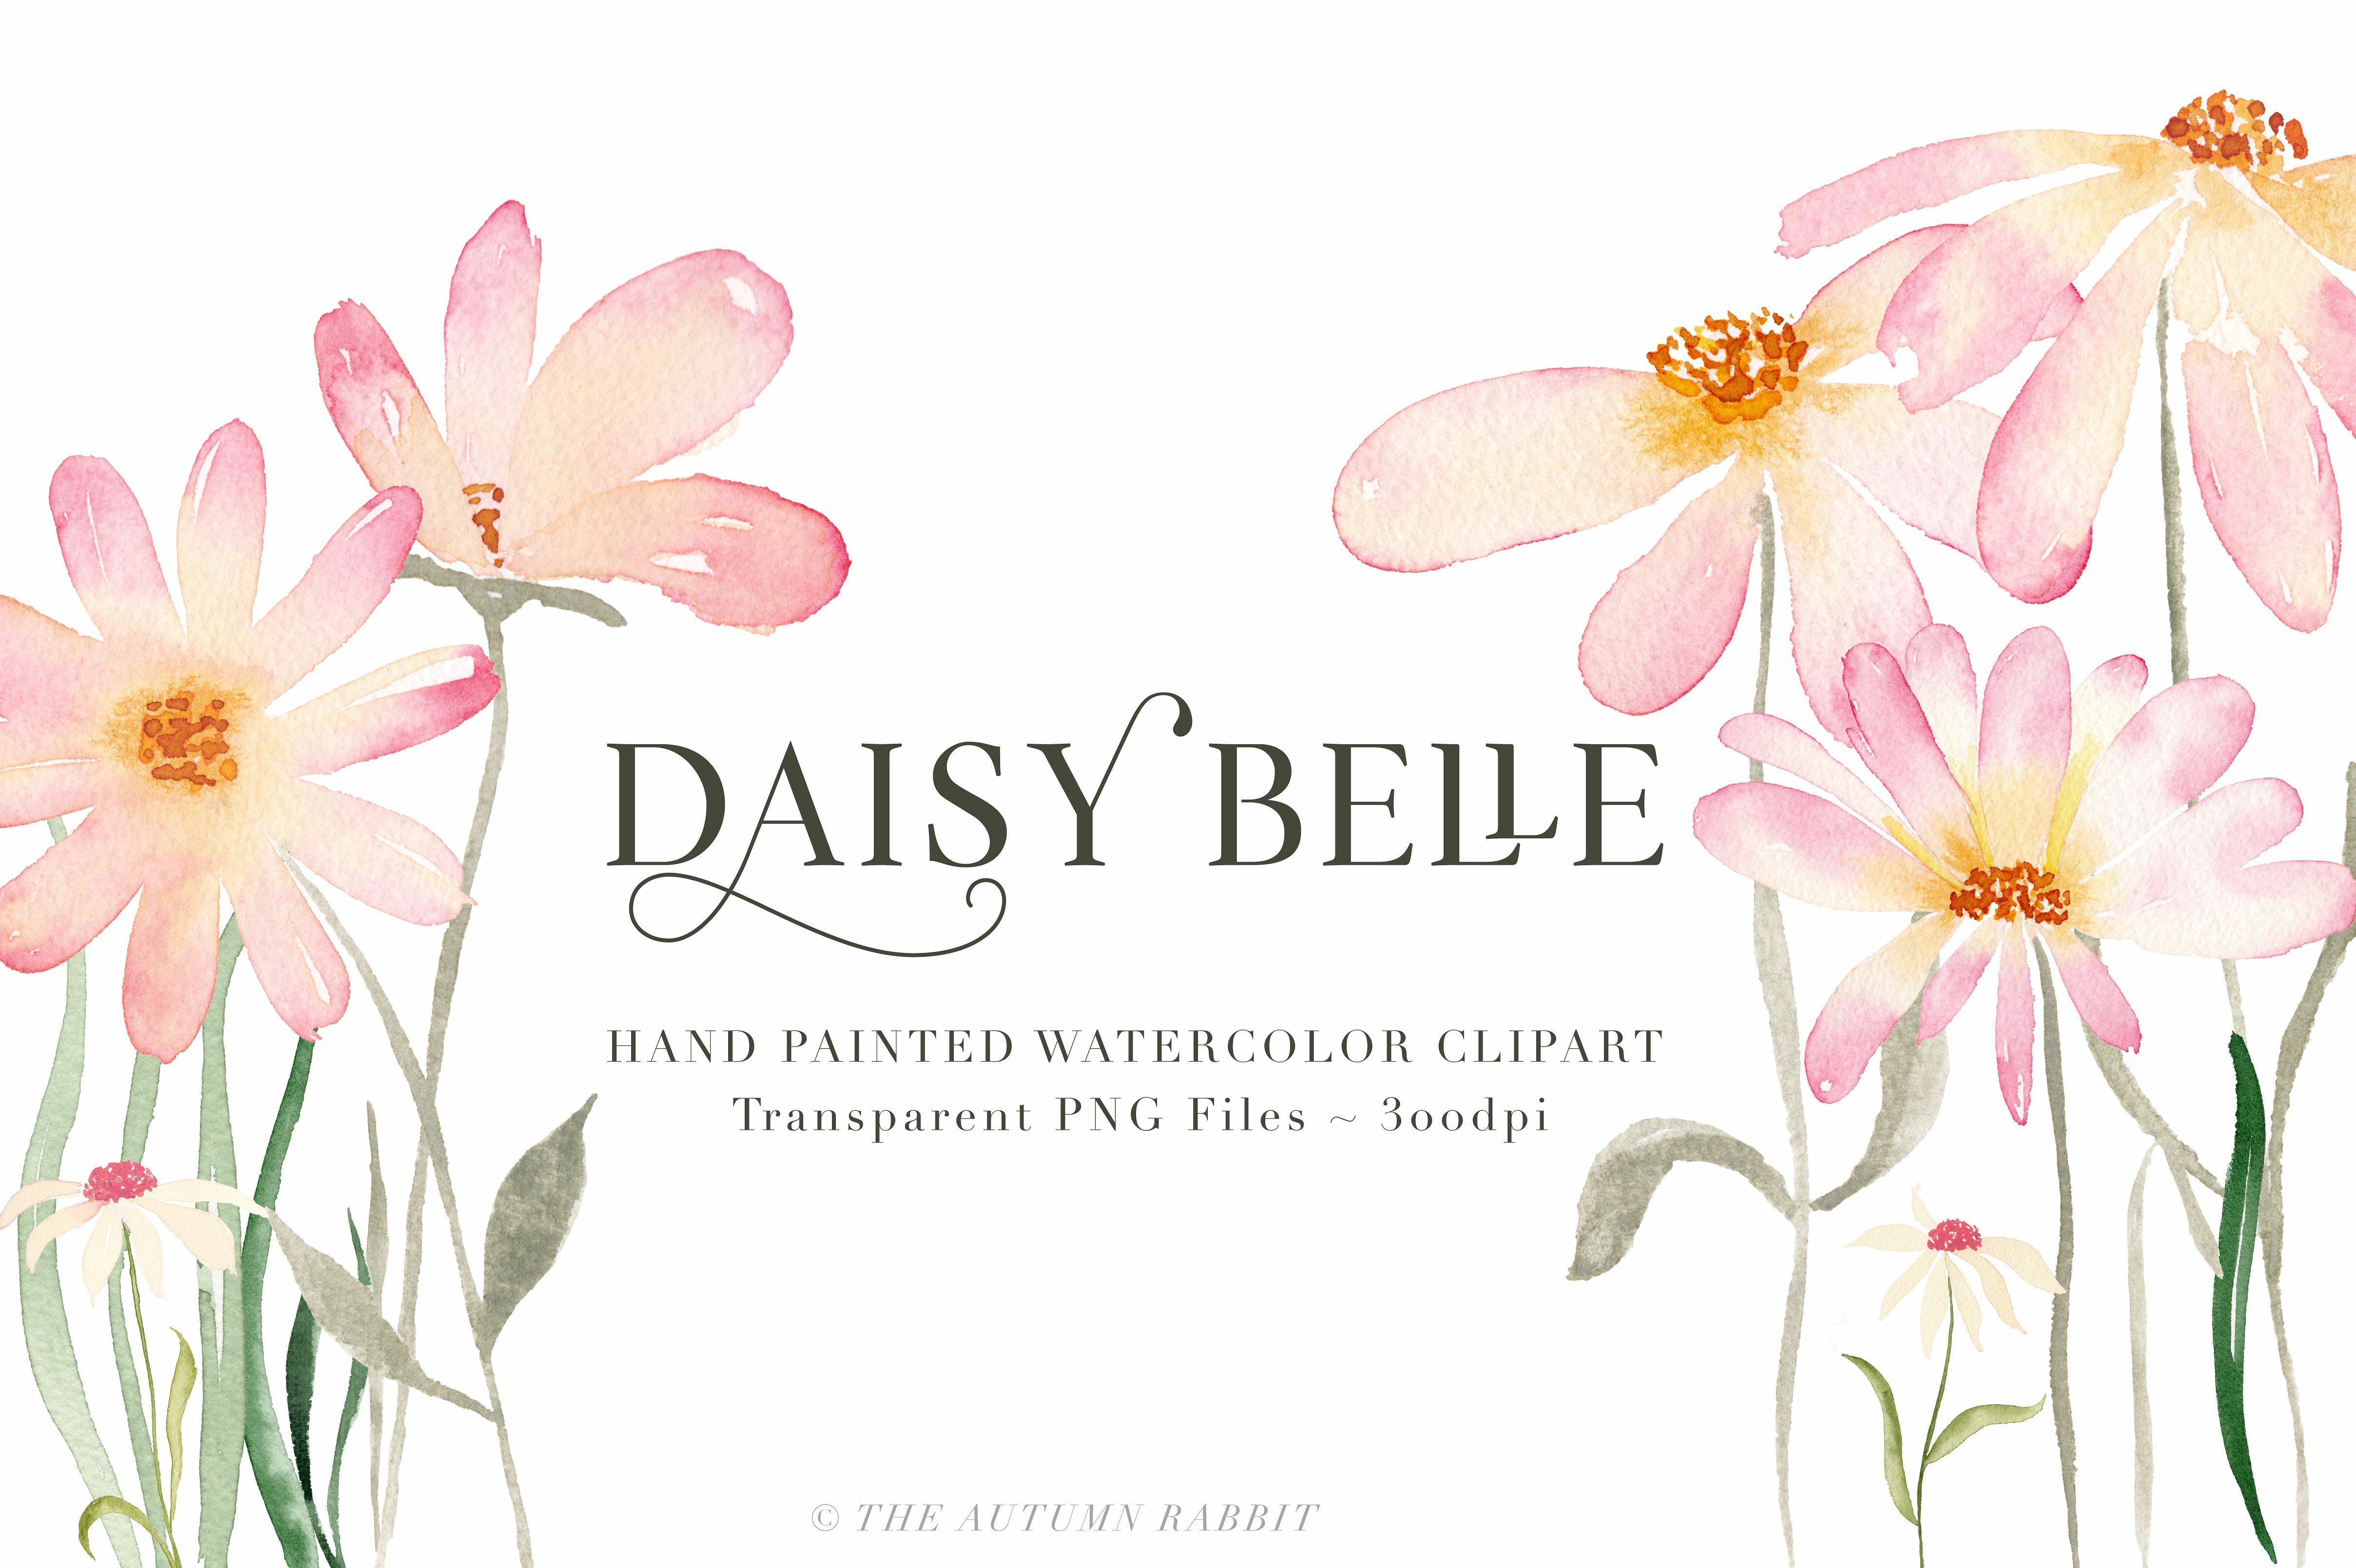 独立手绘花卉树叶图像 Daisy Belle Waterc